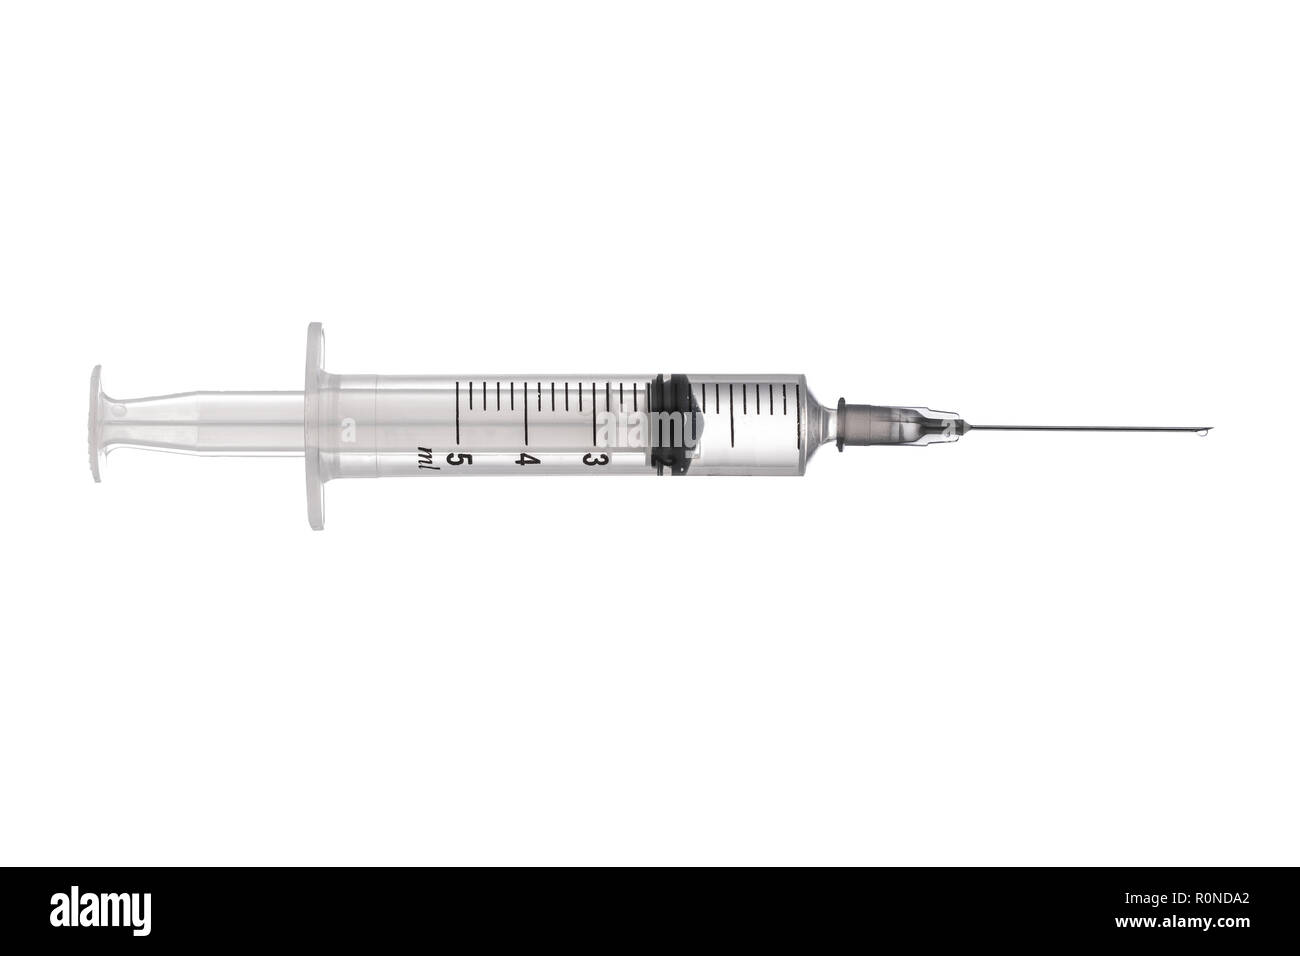 Syringe closeup isolated on white background. Stock Photo